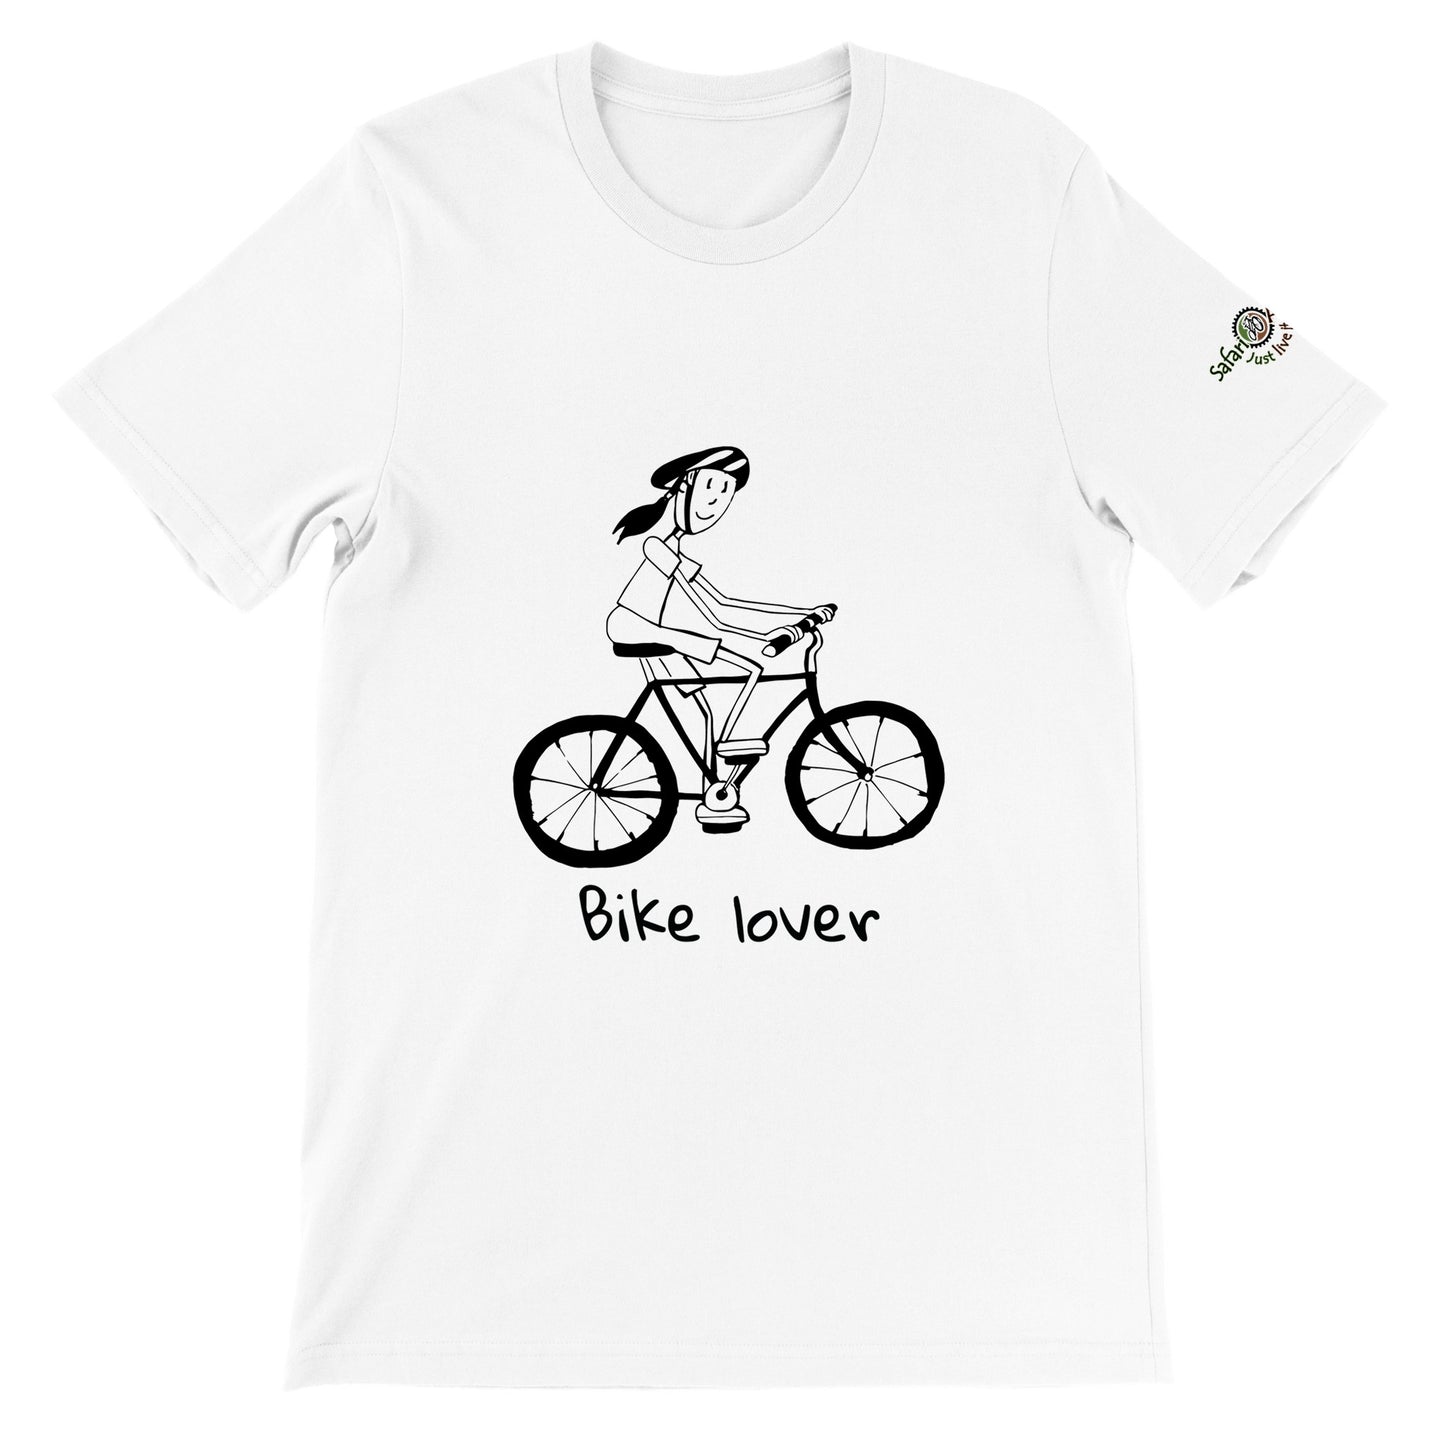 Bike Lover womans cartoon t-shirt